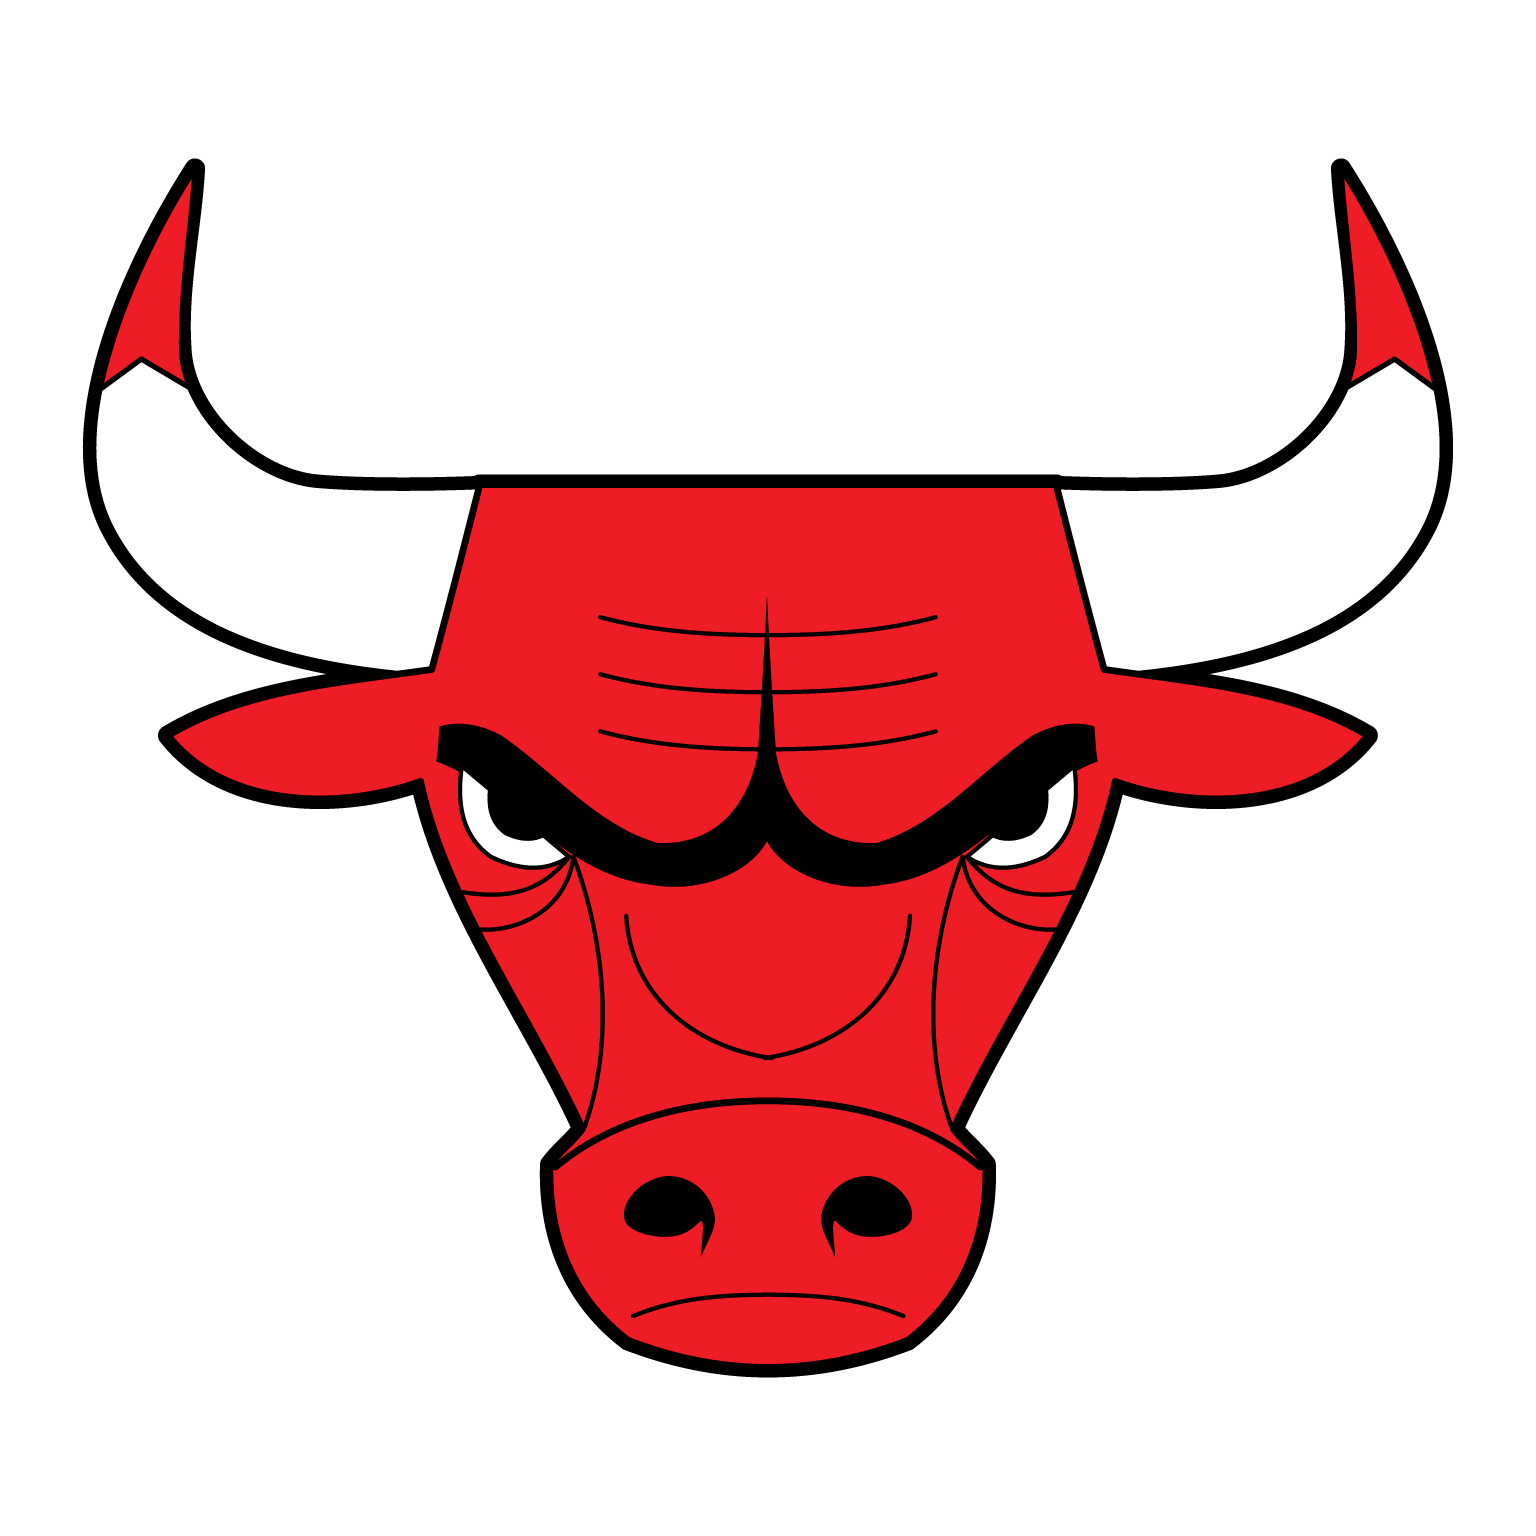 escudo chicago bulls benny